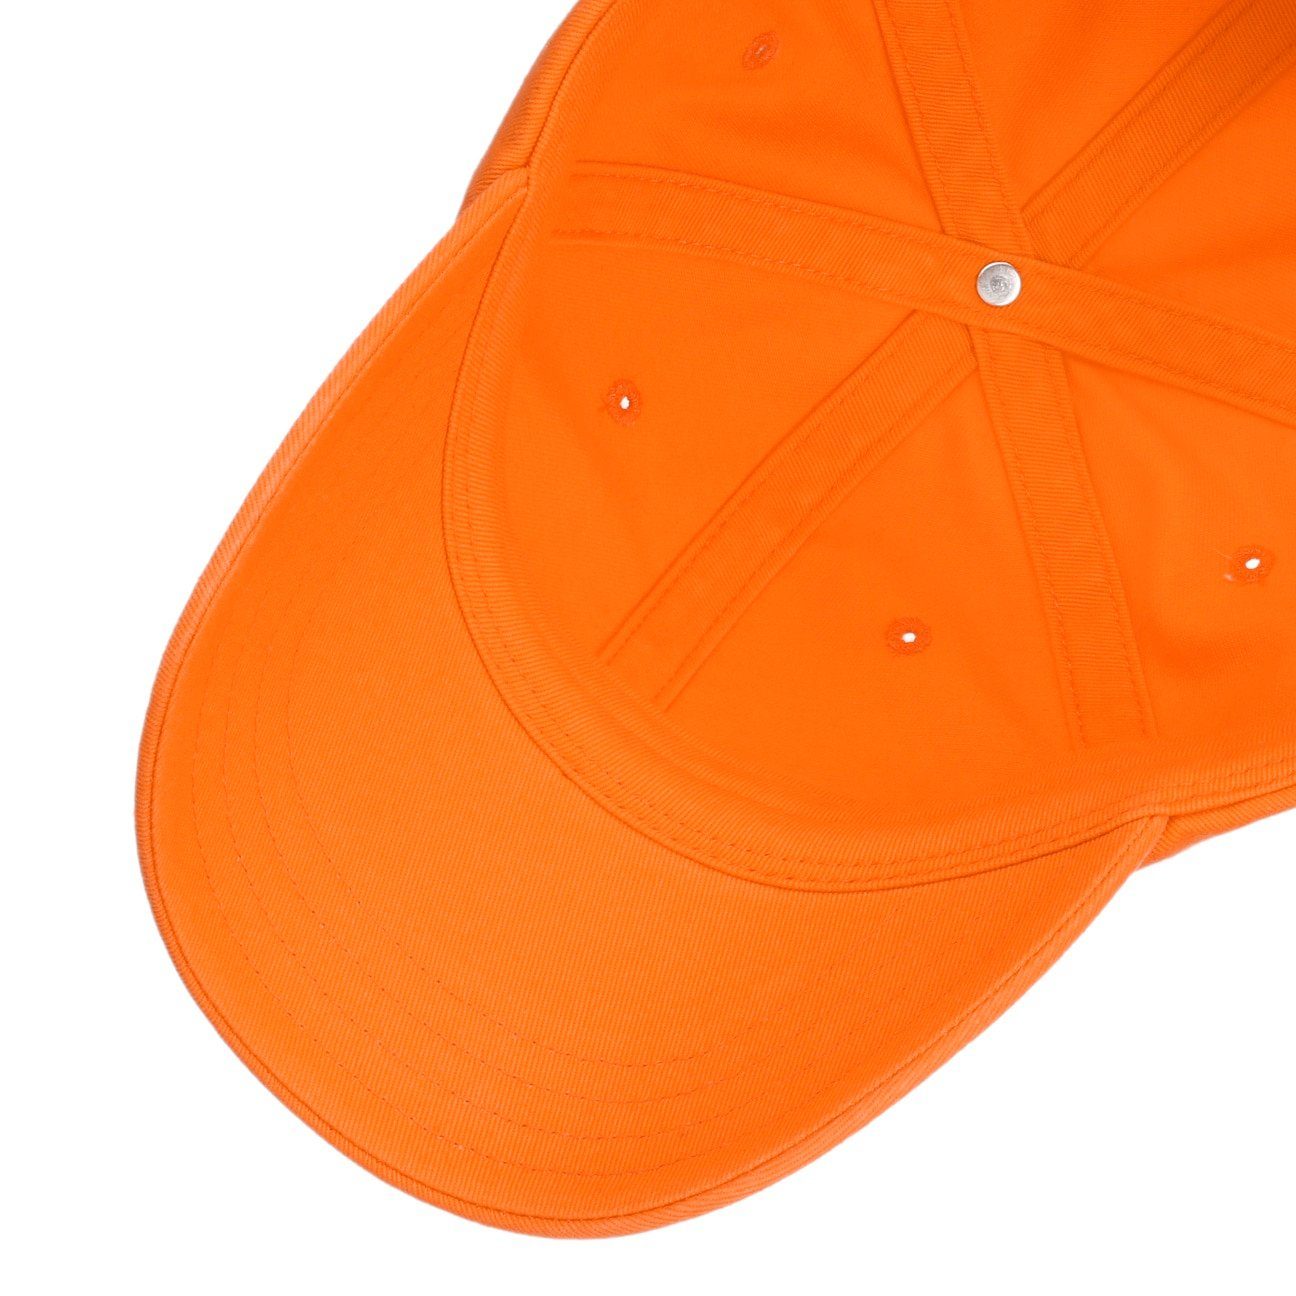 Stetson (1-St) orange Metallschnalle Cap Baseball Basecap